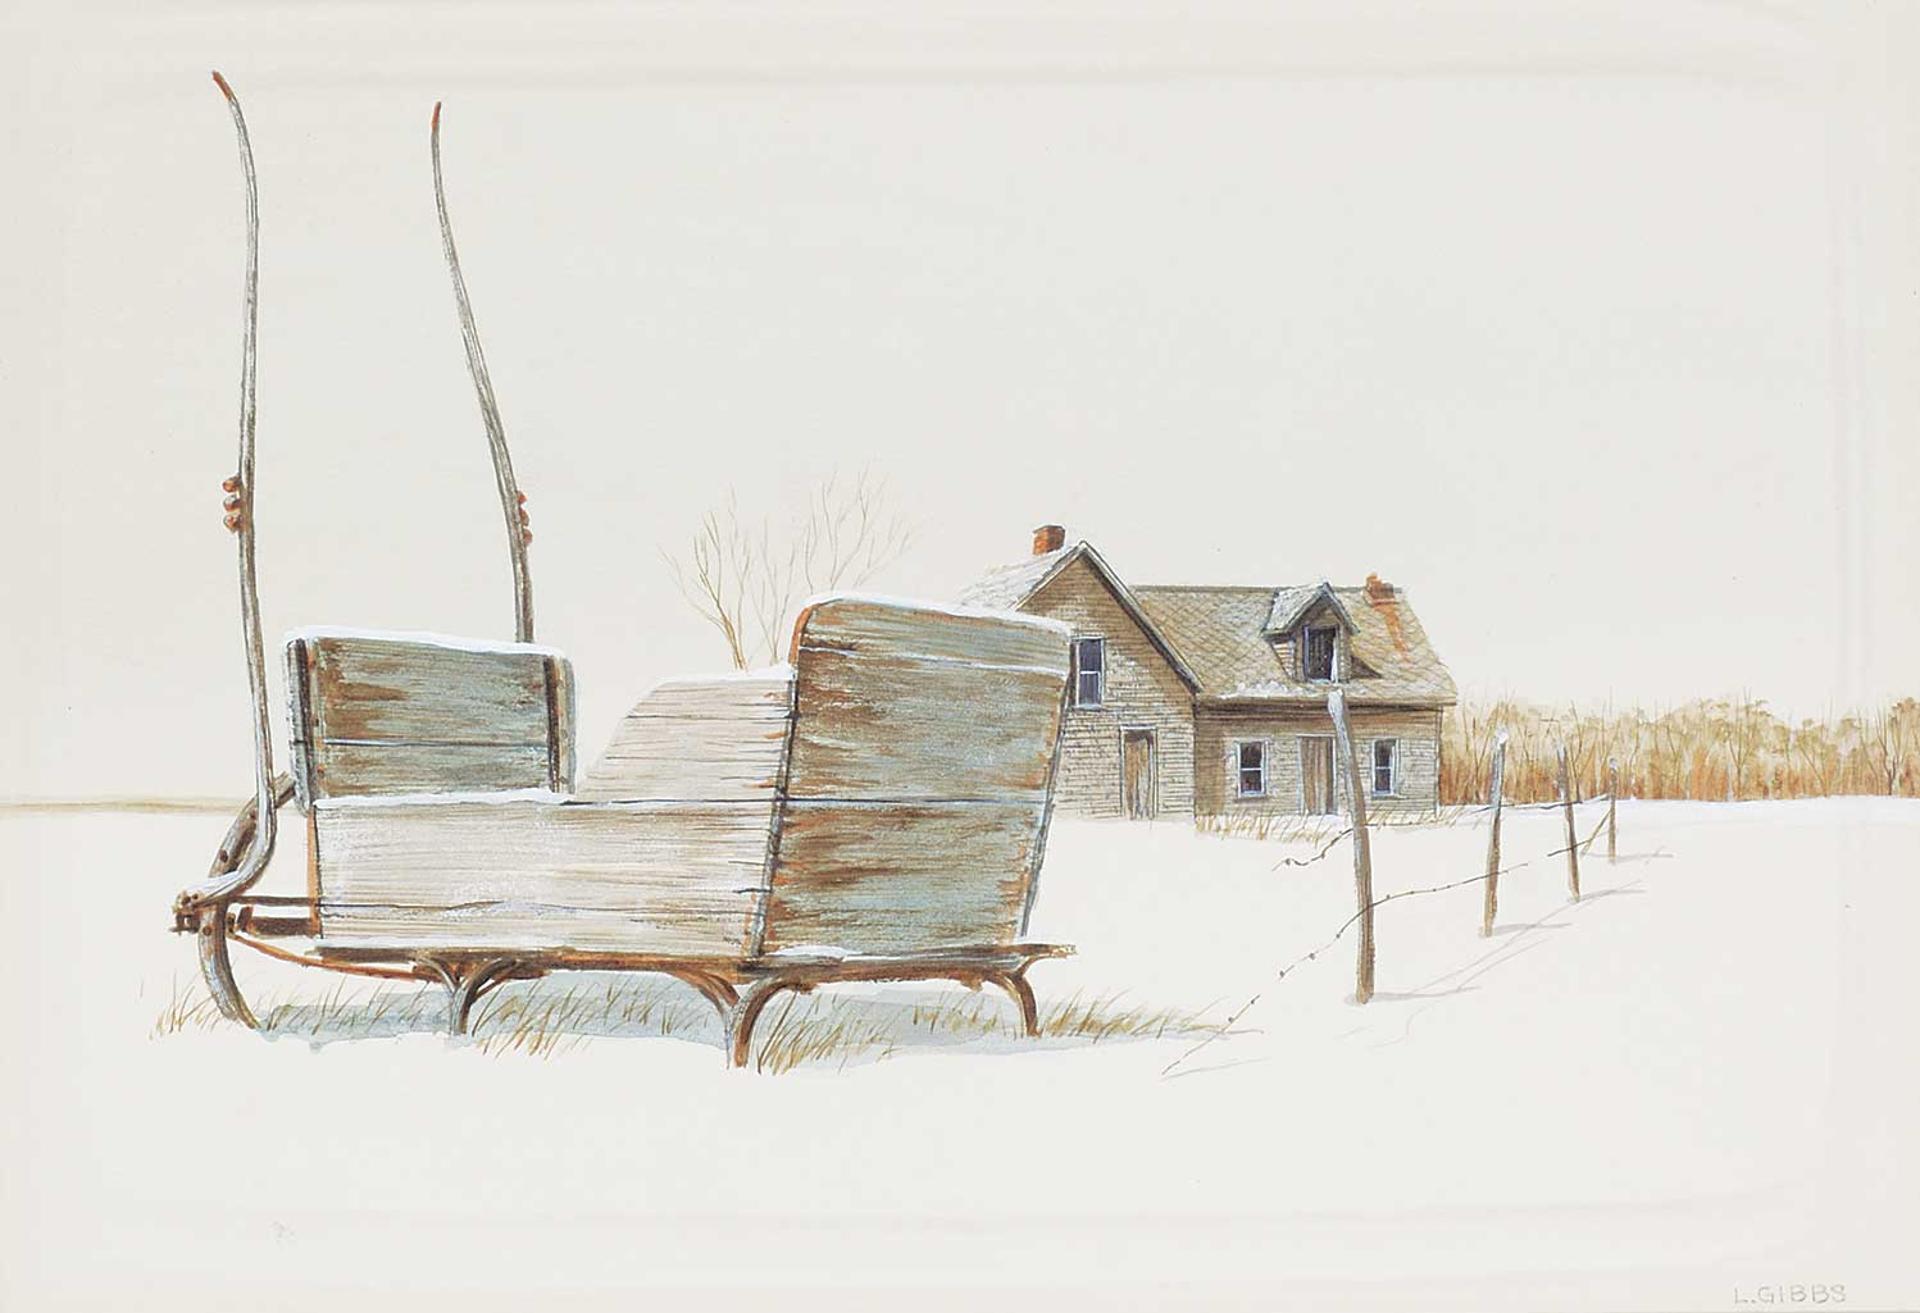 Leonard (Len) James Gibbs (1929-2010) - Untitled - The Old Winter Sleigh